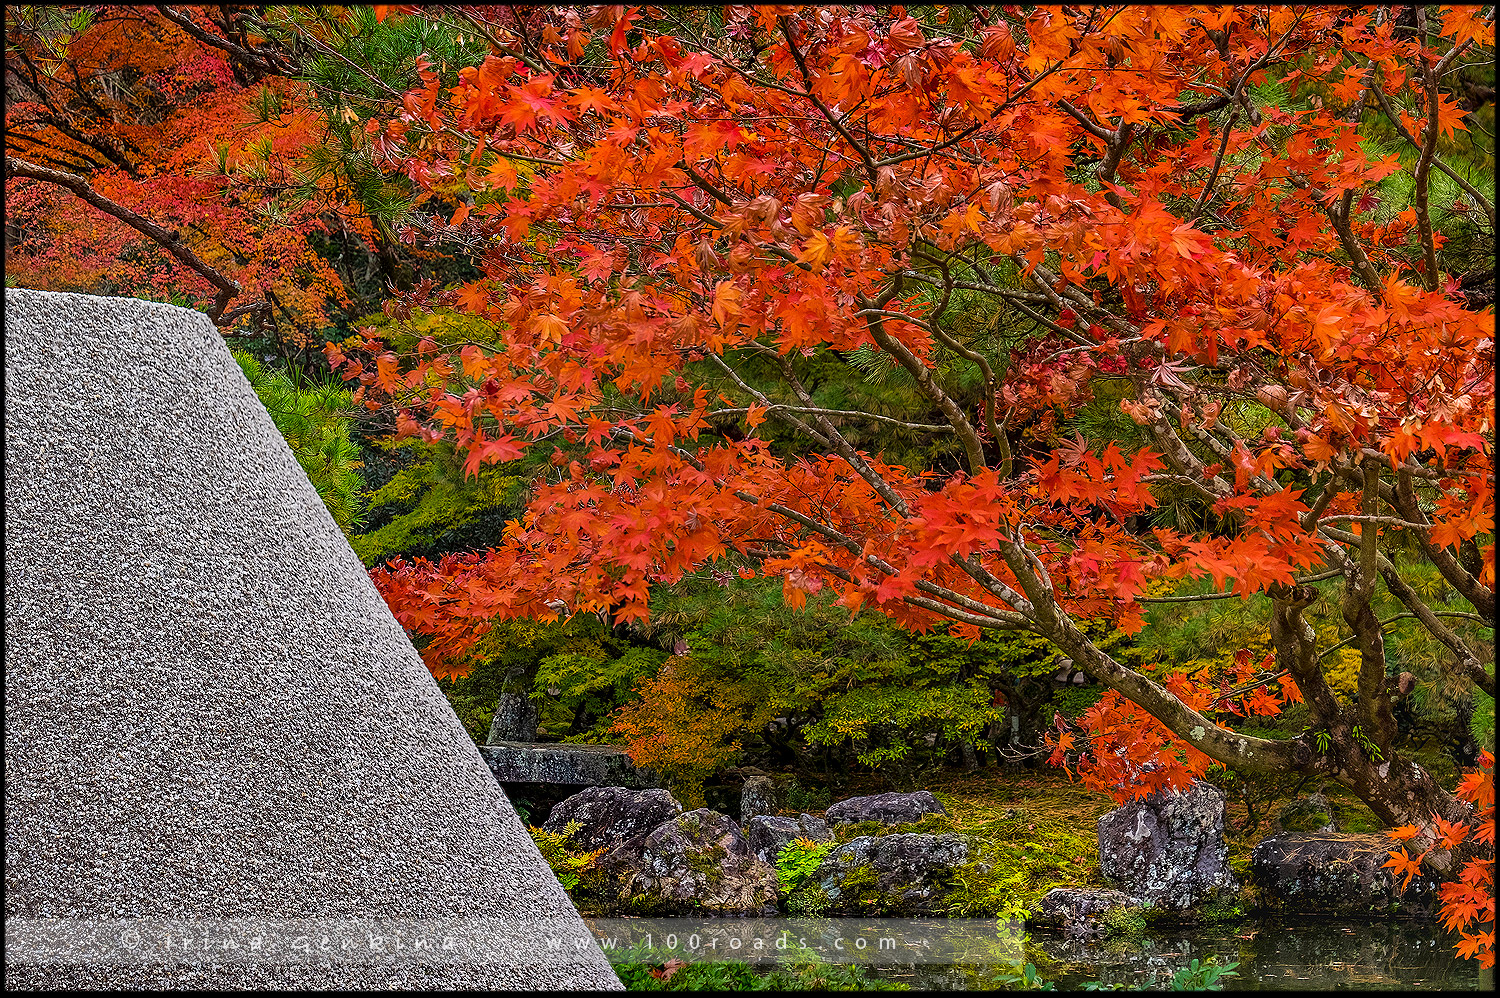 Киото (Kyoto) – «Серебряный павильон» – Гинкаку-дзи (Ginkaku-ji)